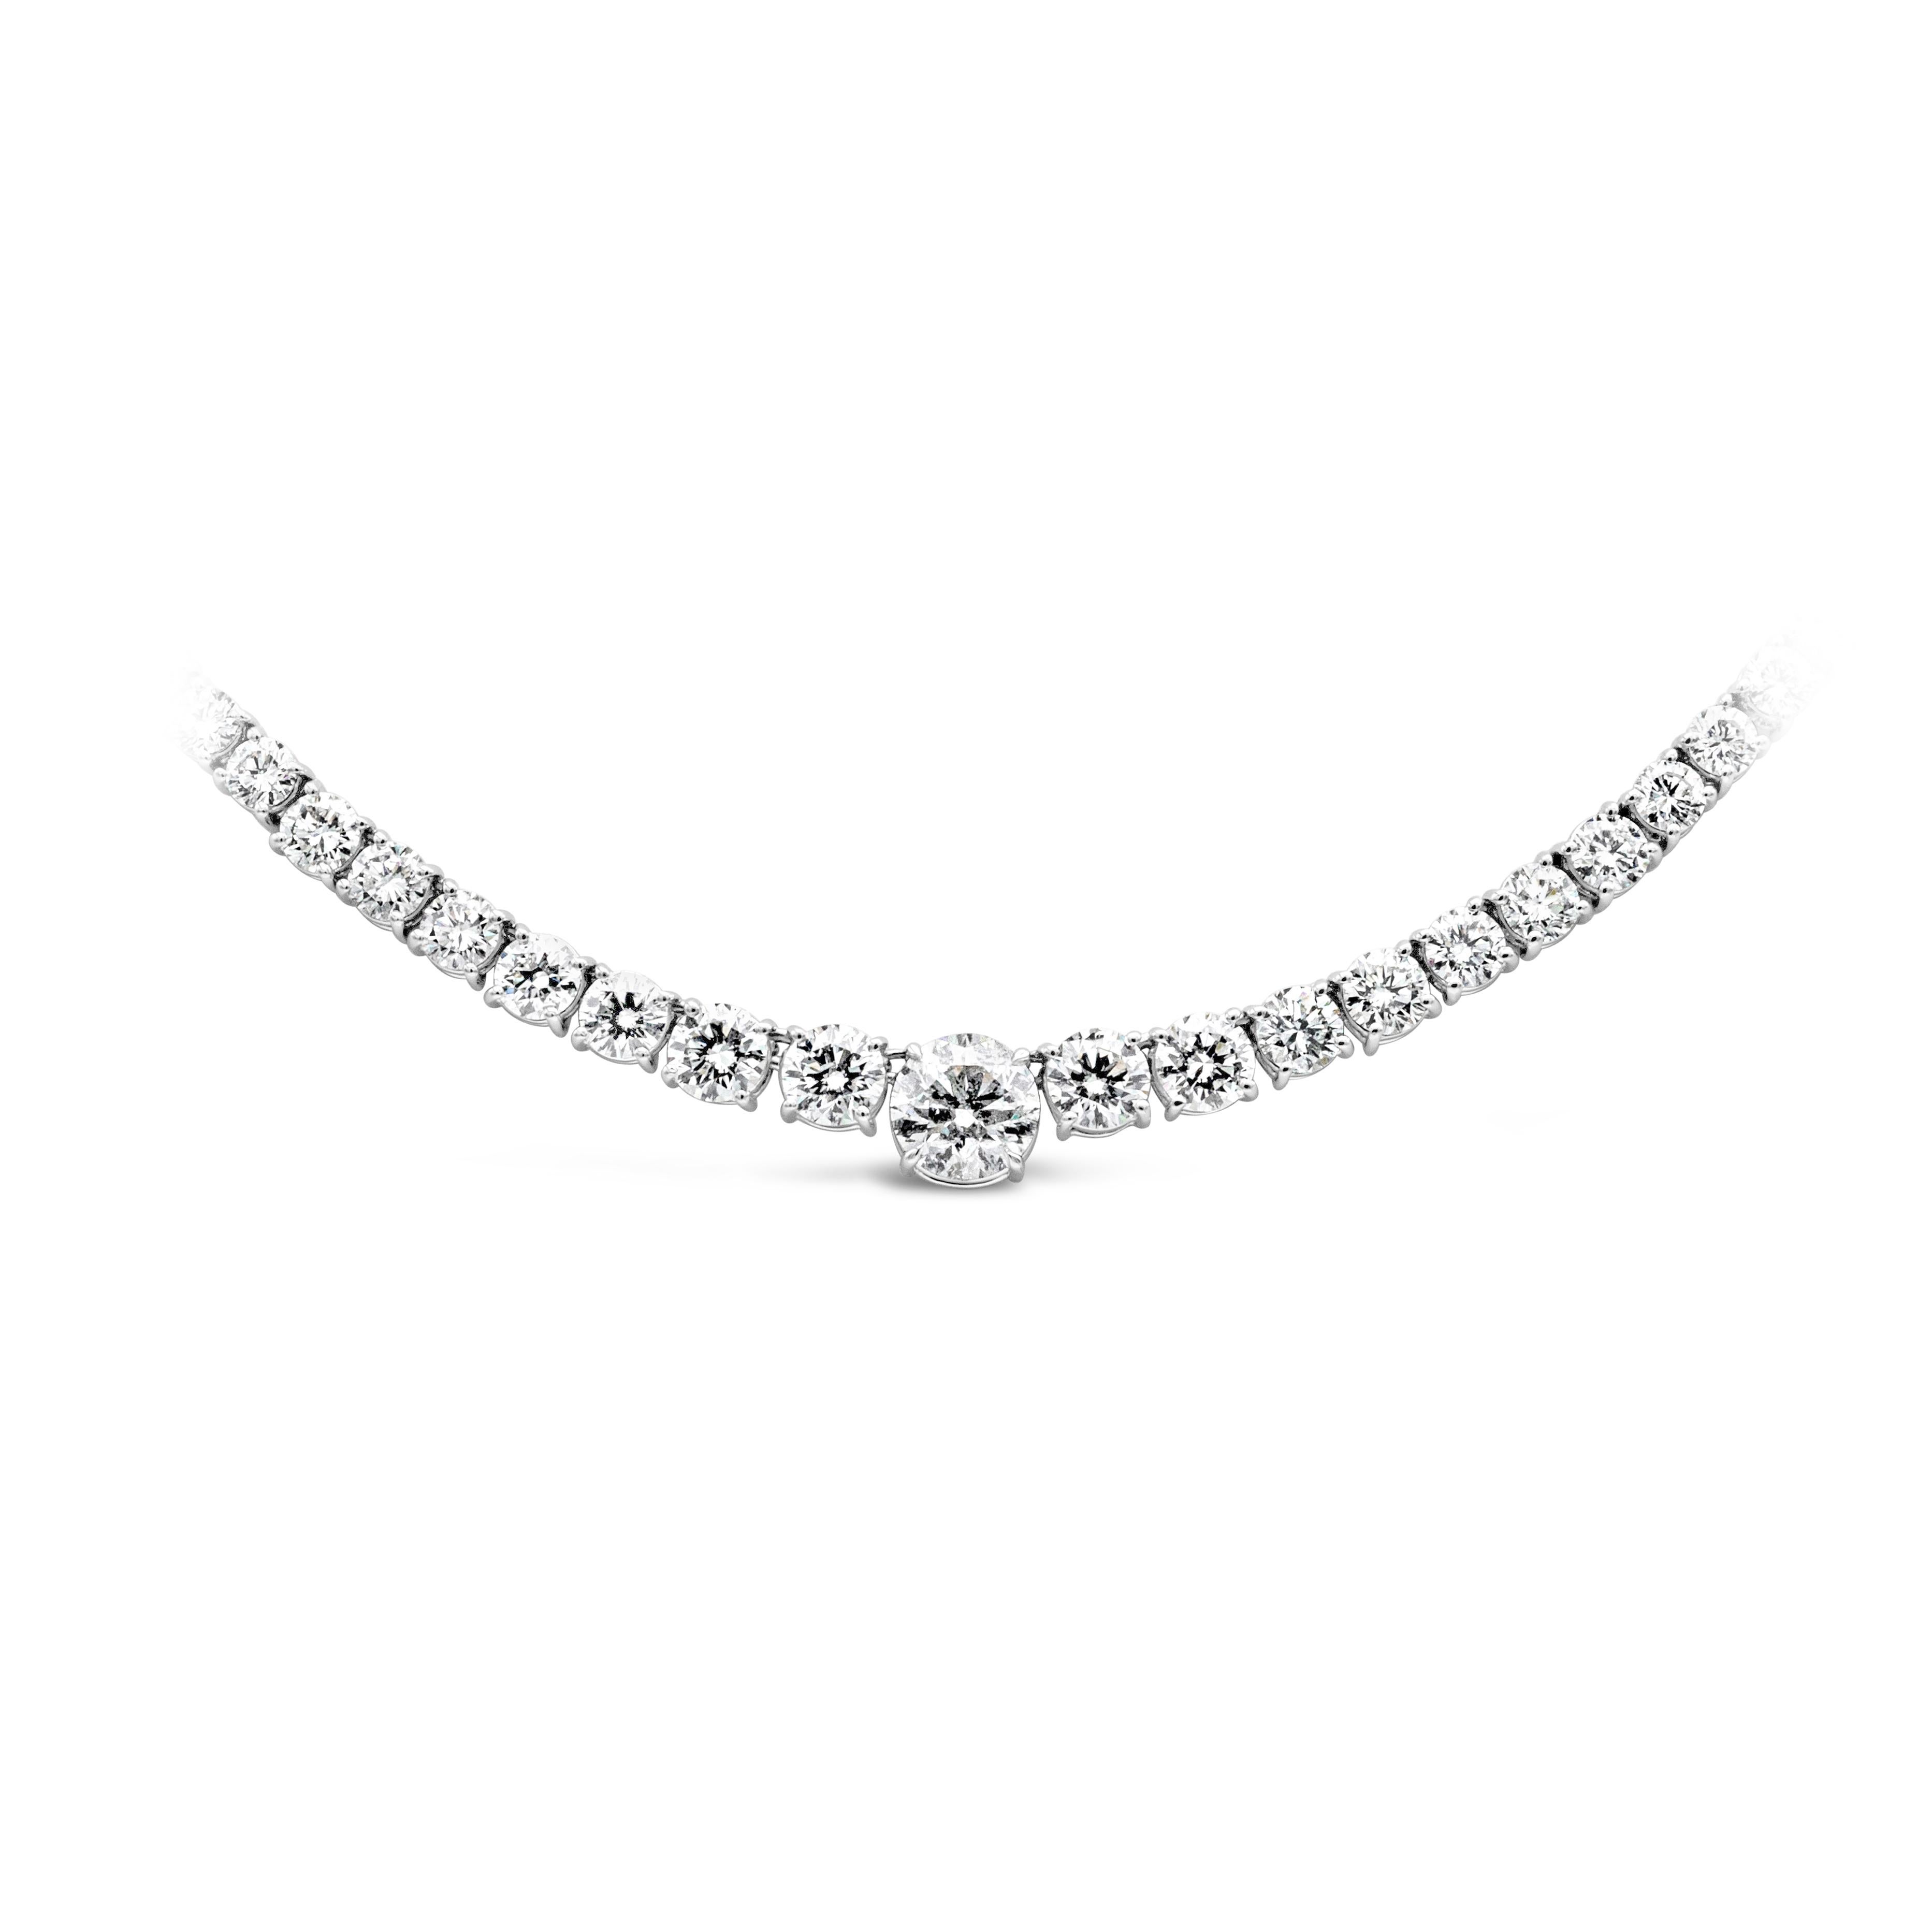  Una pieza de joyería brillante y clásica que muestra una línea de diamantes brillantes redondos que se agrandan elegantemente hacia el centro del collar. El diamante más grande del centro pesa 2,02 quilates y está certificado por el GIA como de